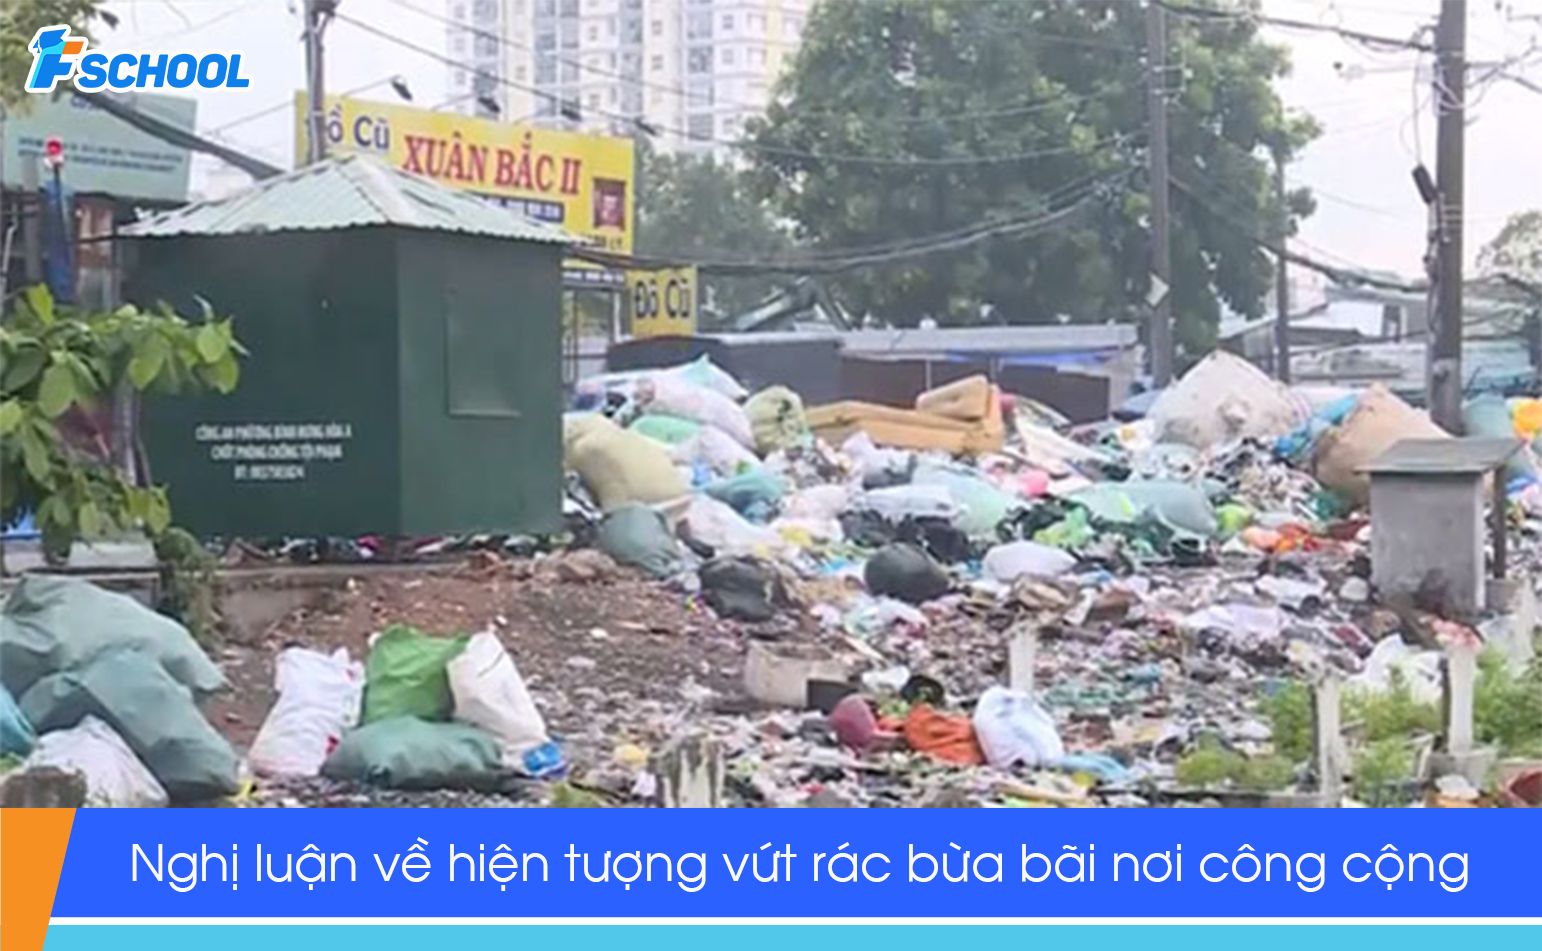 Đề bài: Suy nghĩ của em về hiện tượng vứt rác bừa bãi nơi công cộng